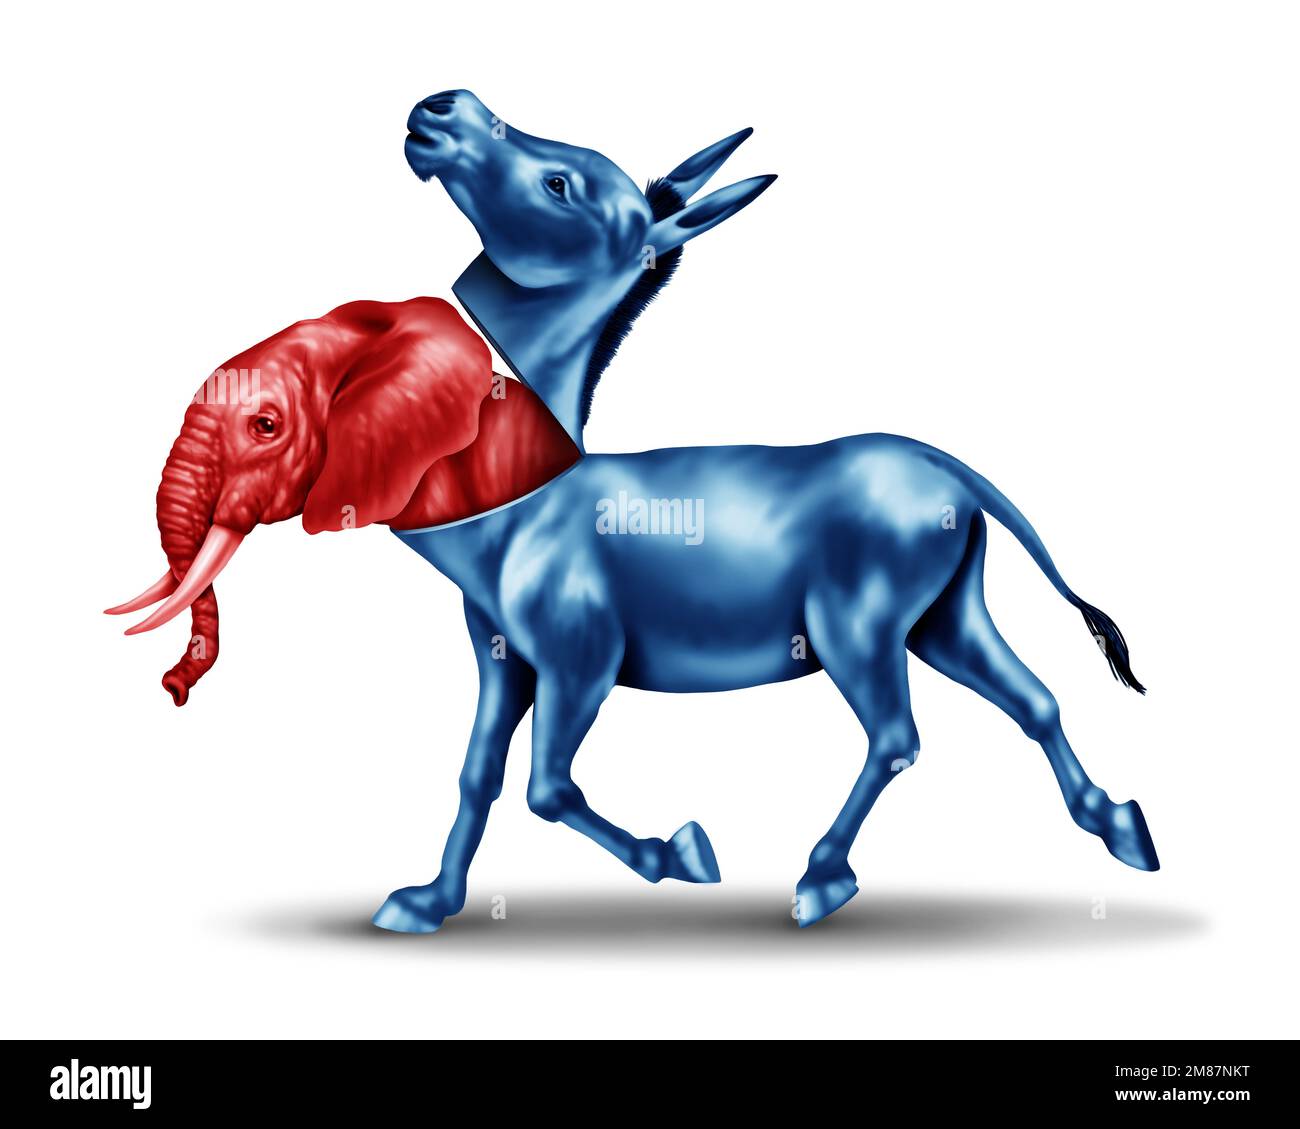 Falso Progressive o armadio liberale come un elefante rosso fingendo o mascherando come un asino blu in una campagna elettorale americana come un simbolo Foto Stock